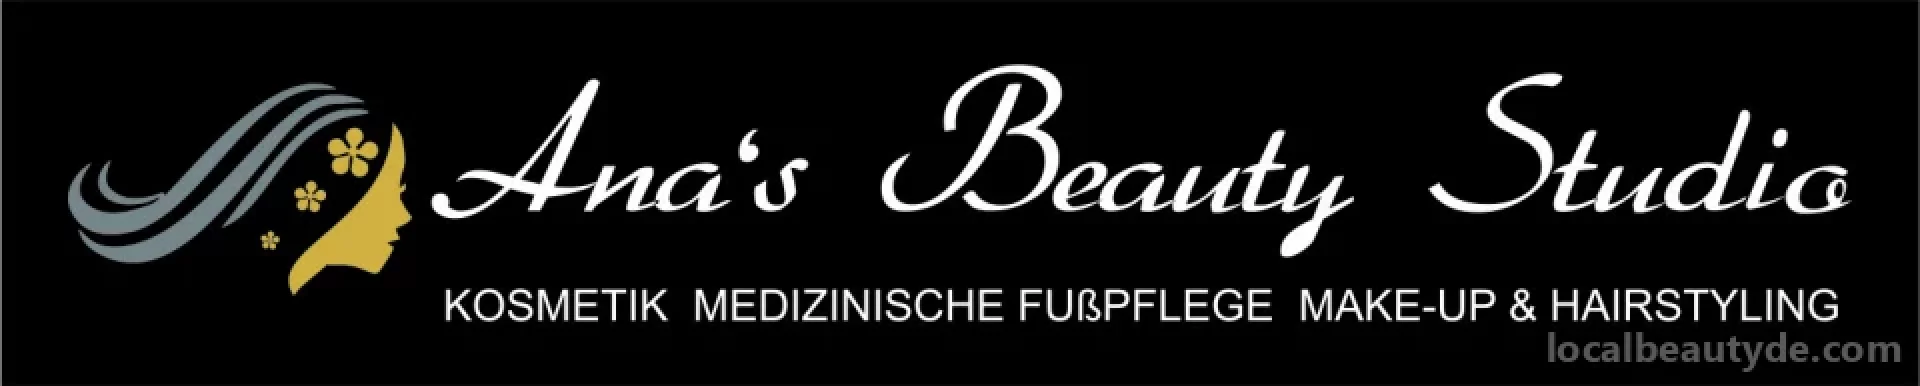 Ana's Beauty Studio, München - 